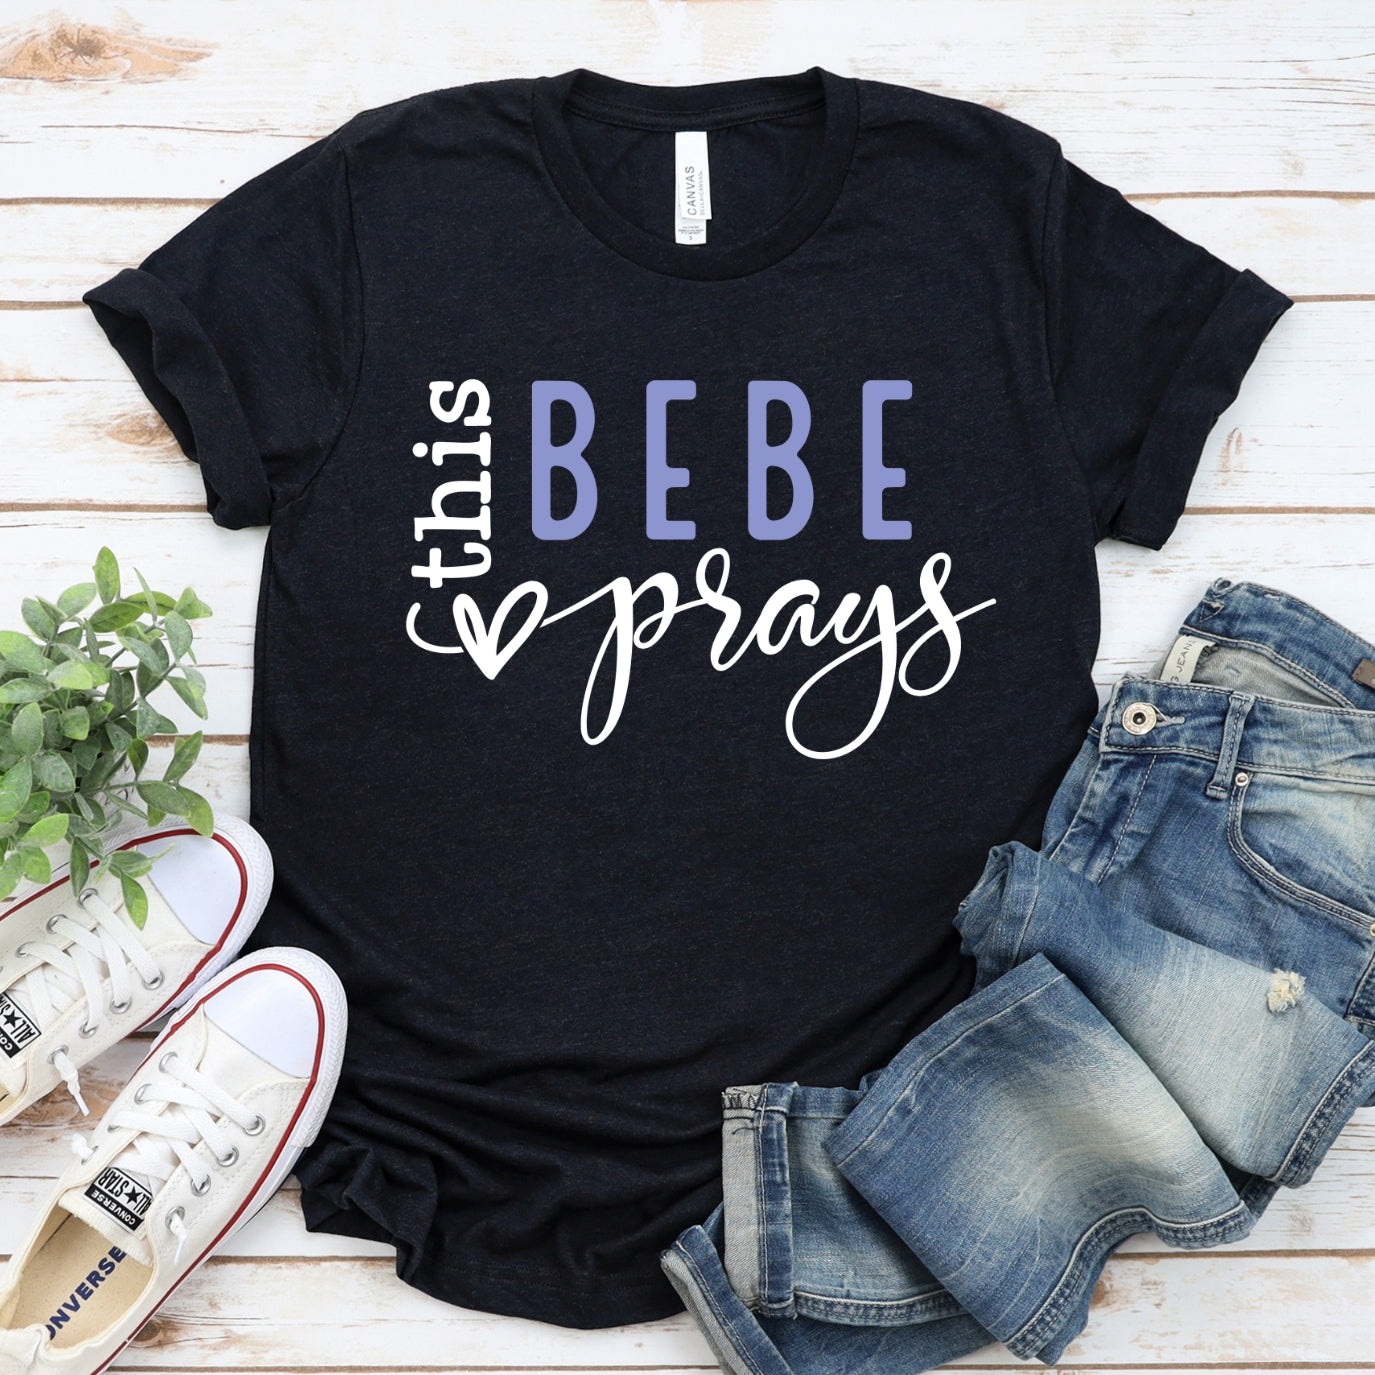 This BeBe Prays Women's T-Shirt